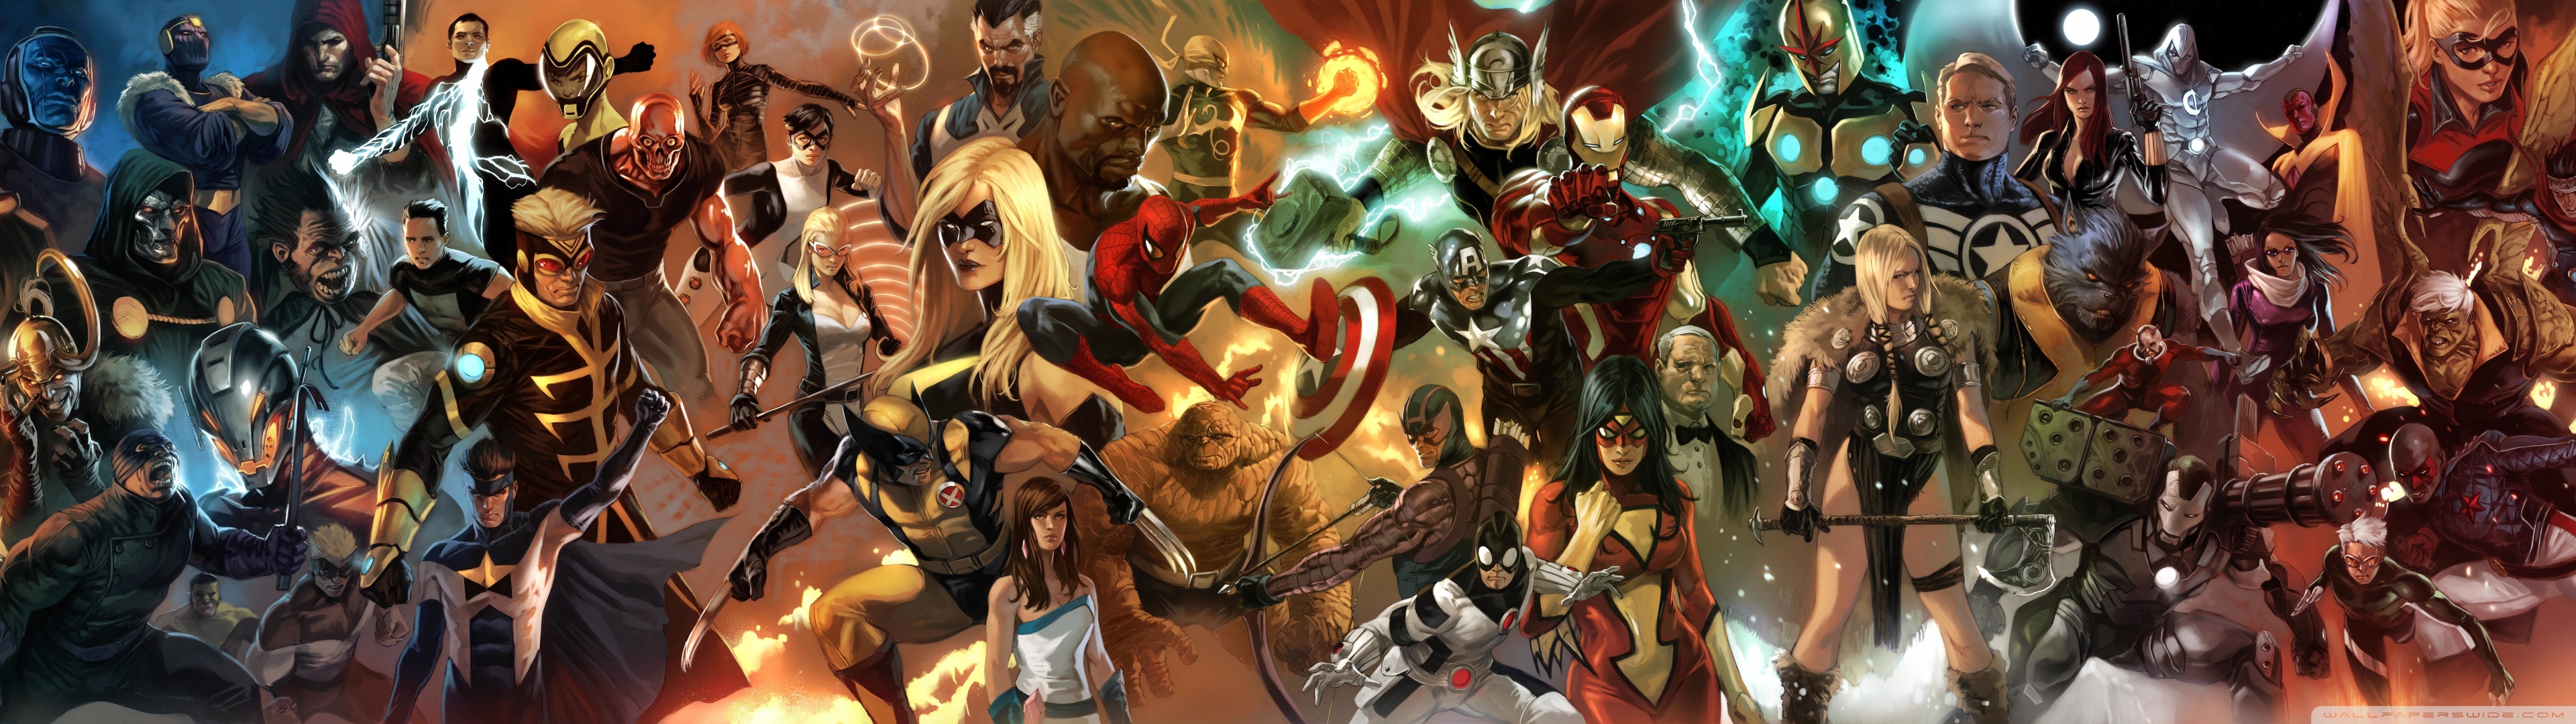 Marvel Ics Characters Wallpaper HD Res